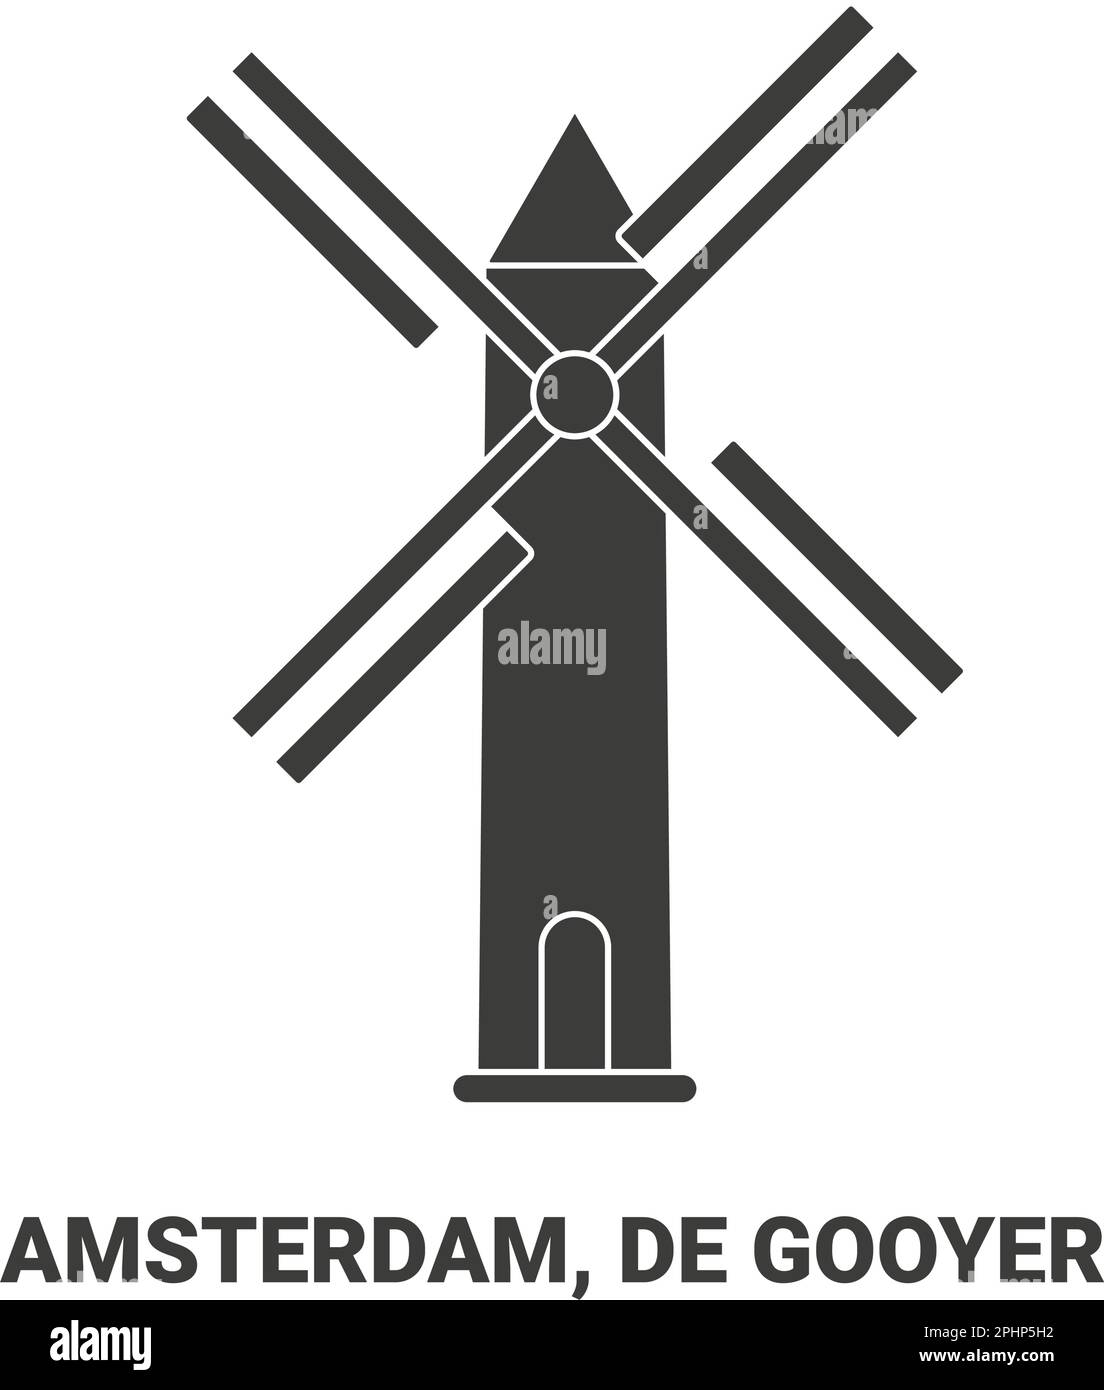 Netherlands, Amsterdam, De Gooyer travel landmark vector illustration Stock Vector